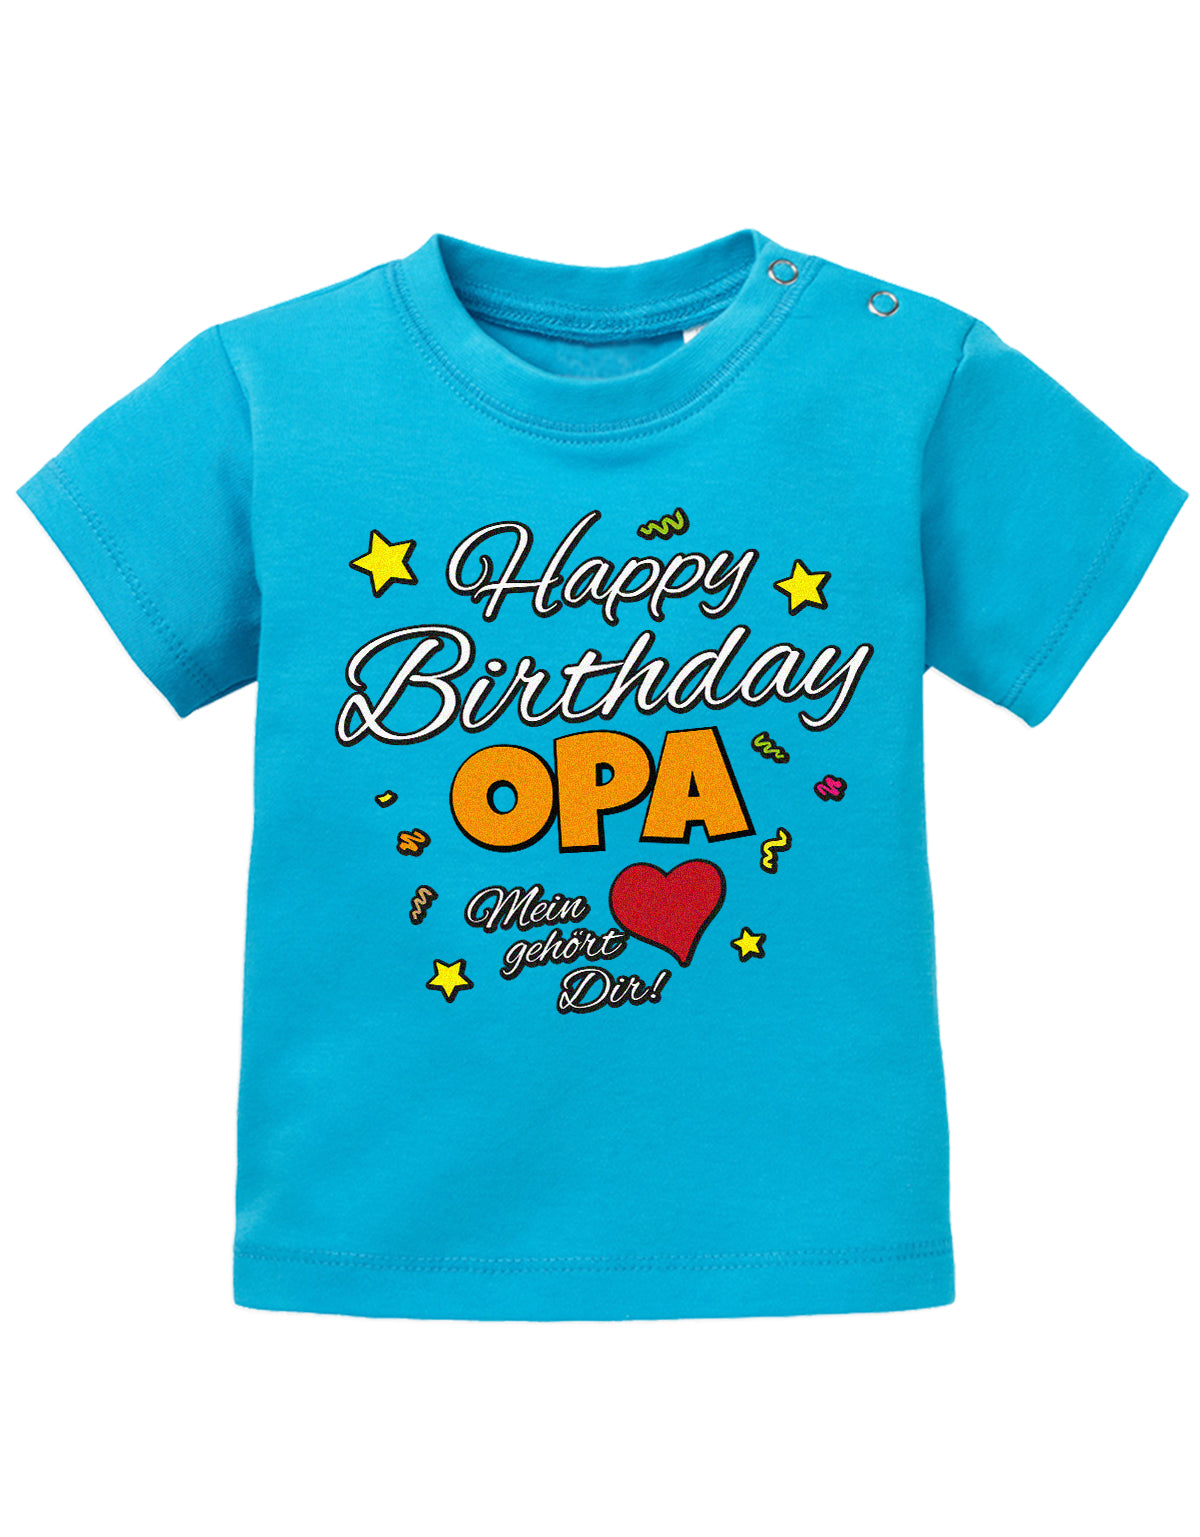 Opa Spruch Baby Shirt. Happy Birthday, Opa, mein Herz gehört Dir. Blau